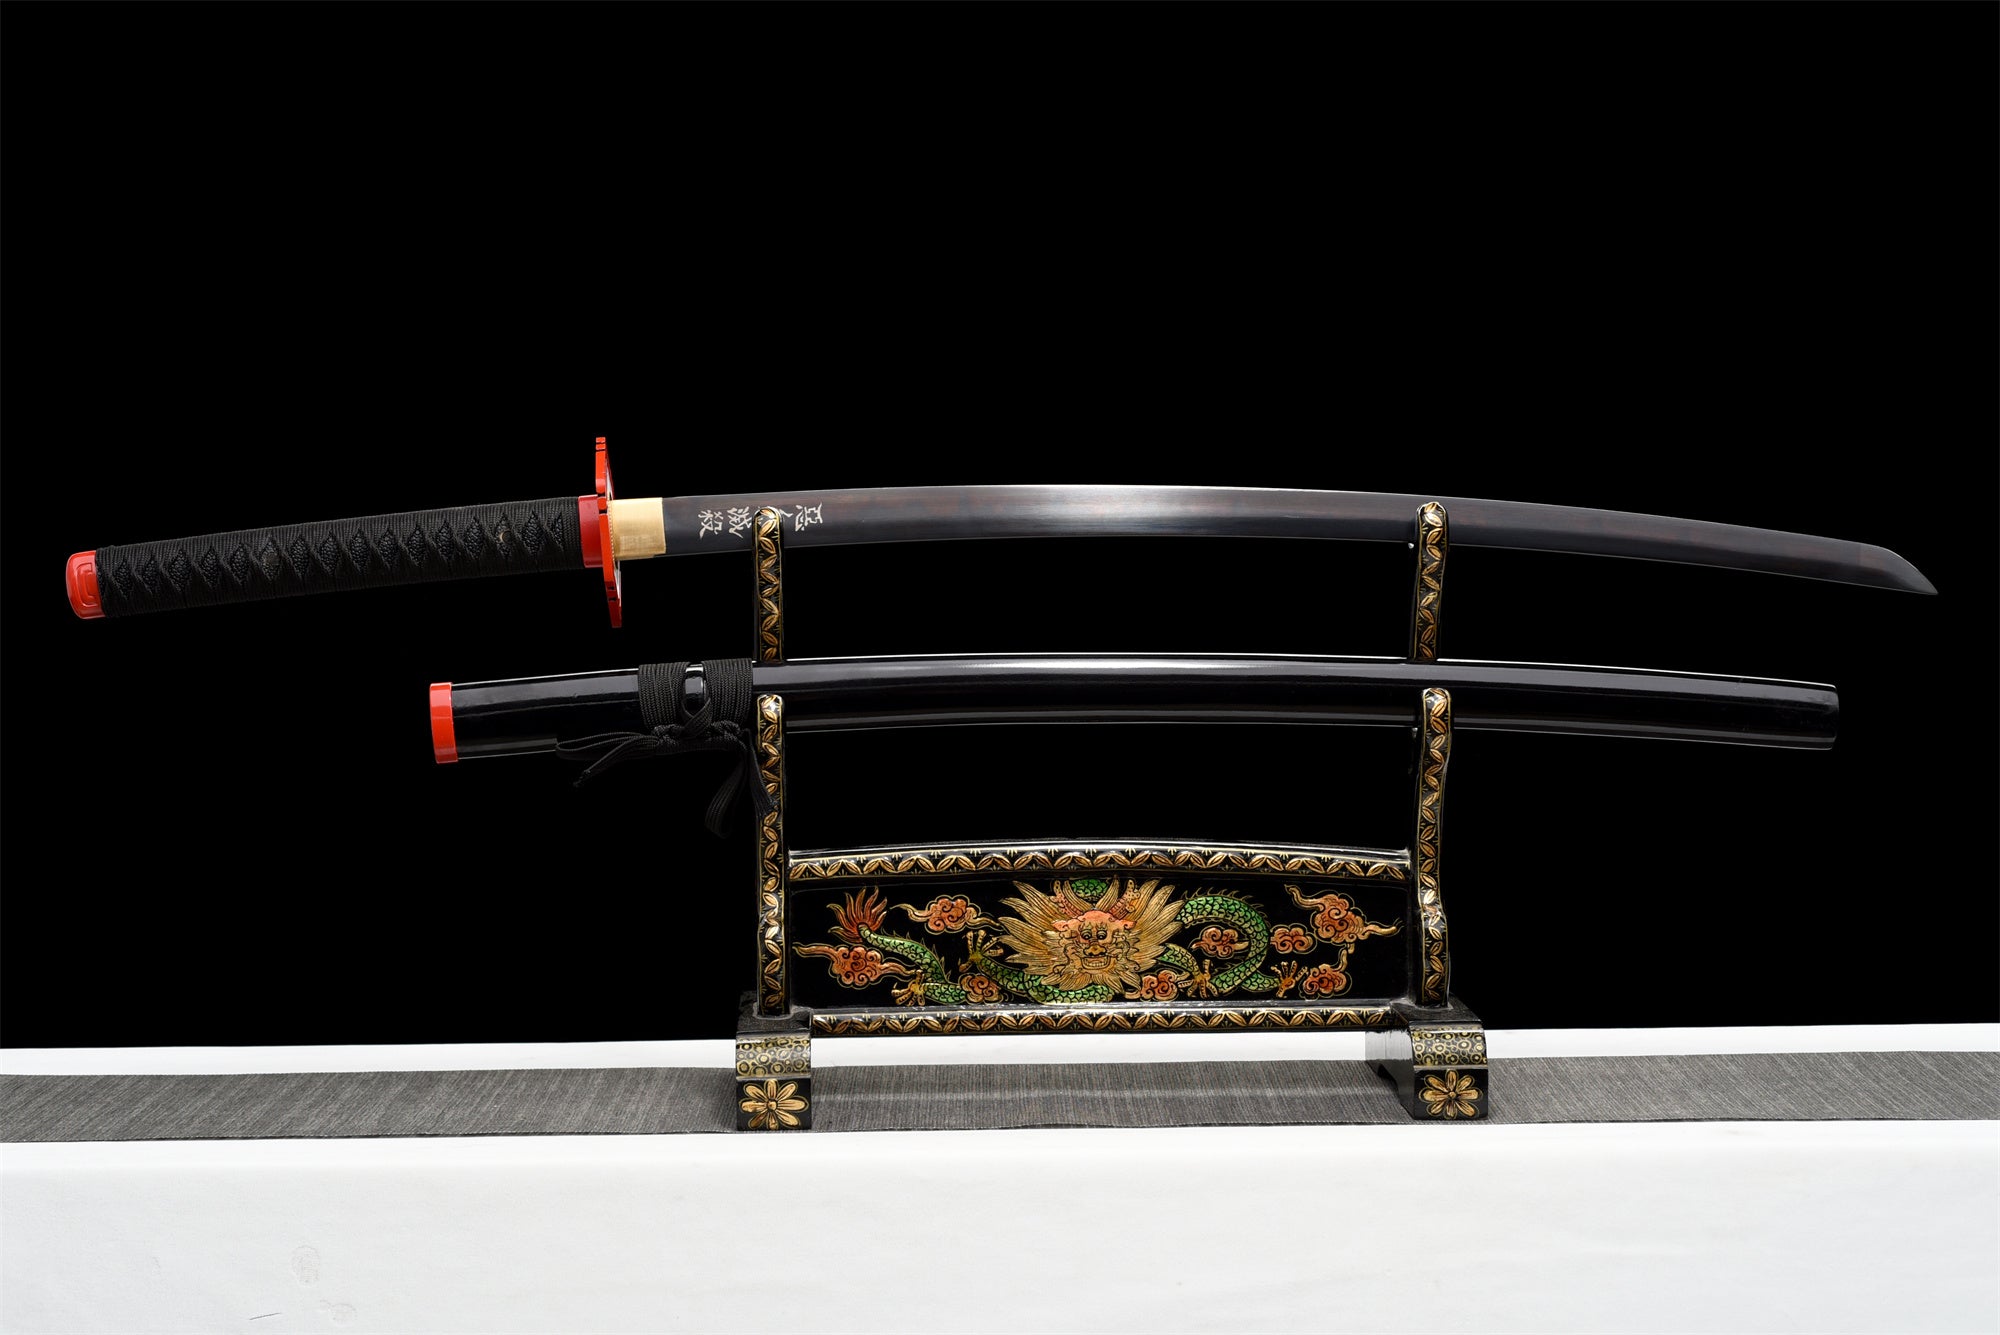 Zoro's Sandai Kitetsu Replica Sword | Patterned Hamon Blade